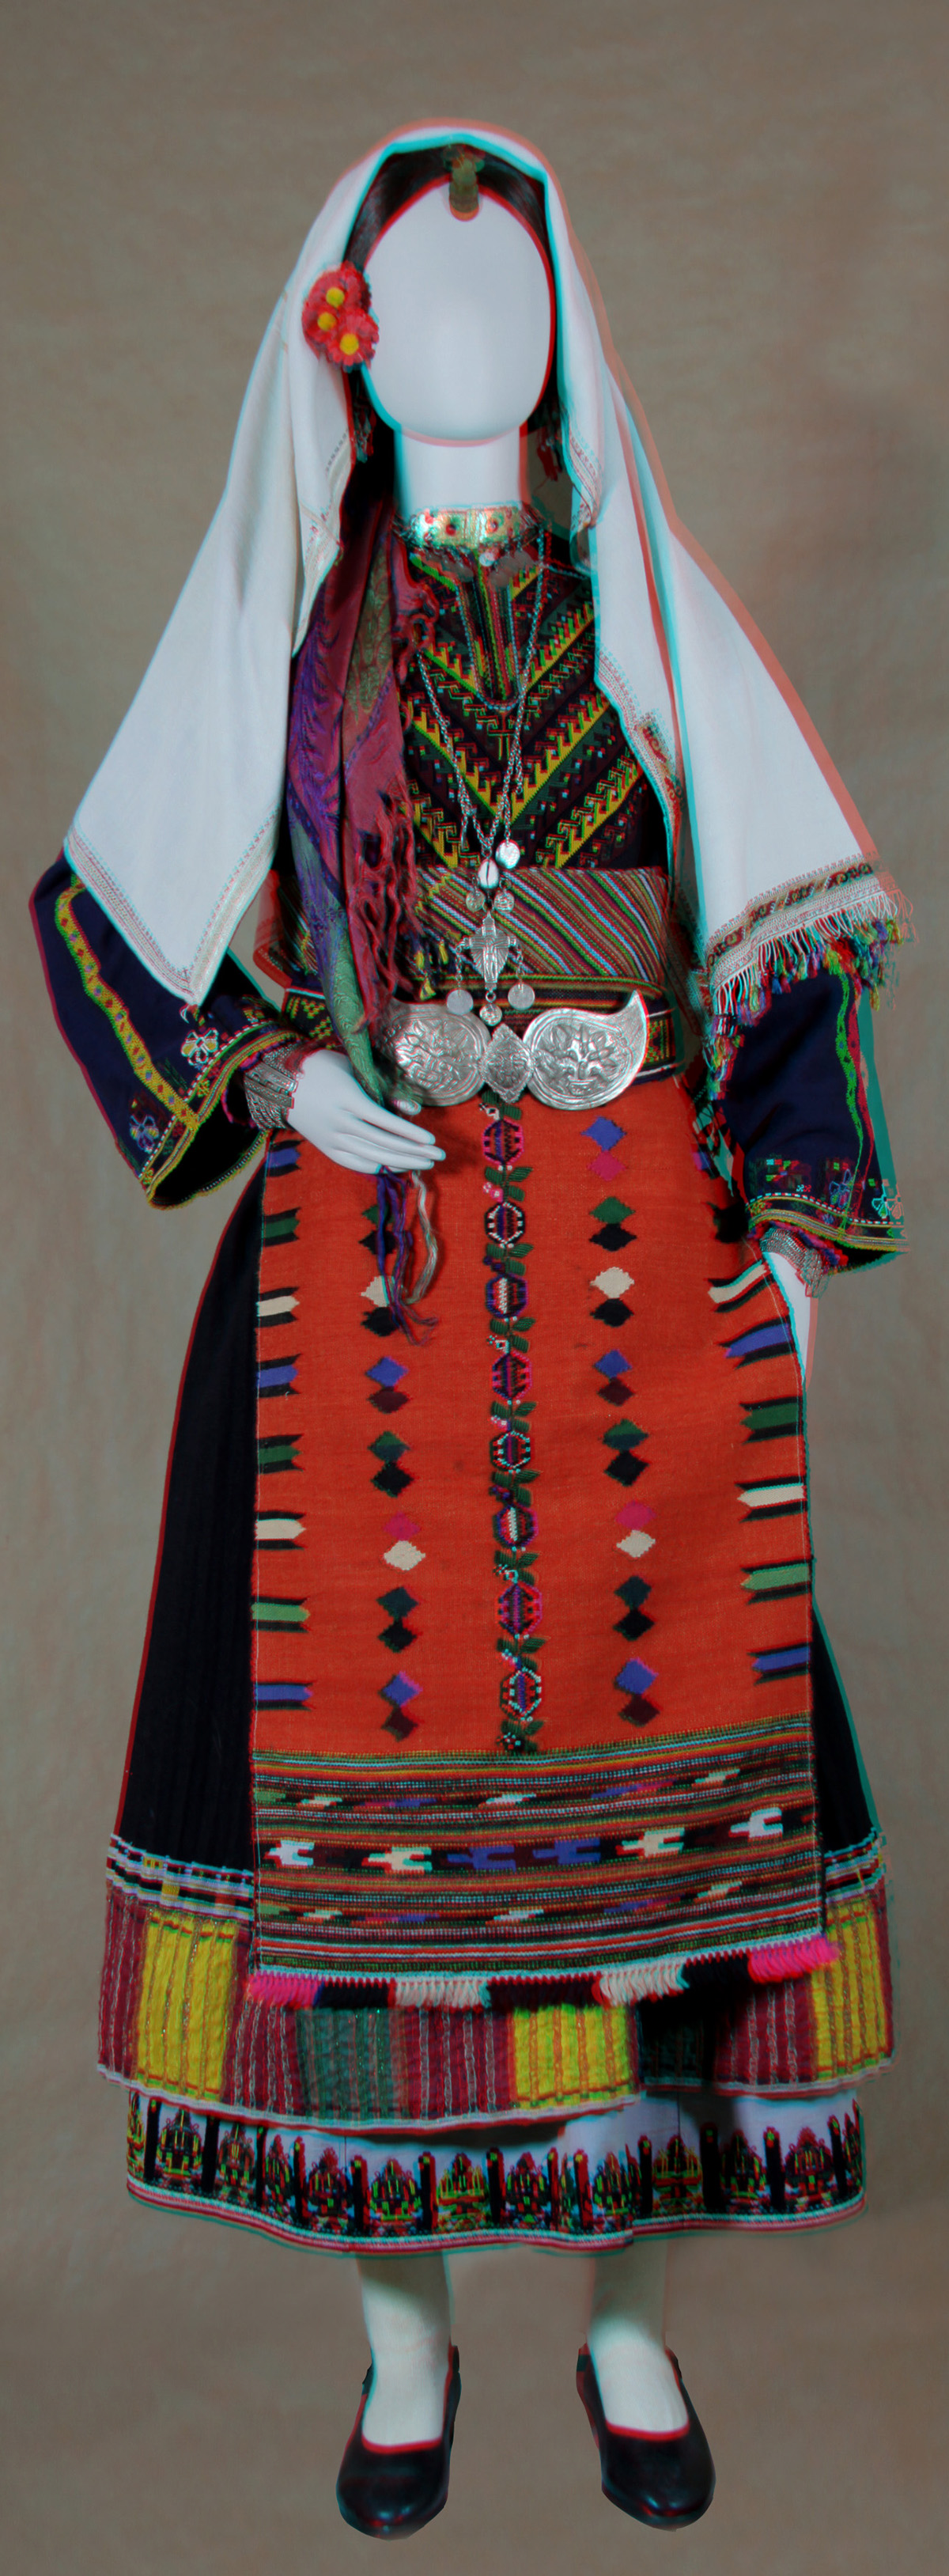 Κούκλα με γυναικεία φορεσιά νιόπαντρης από το Καβακλί (από την αίθουσα Θράκης-προσφύγων)